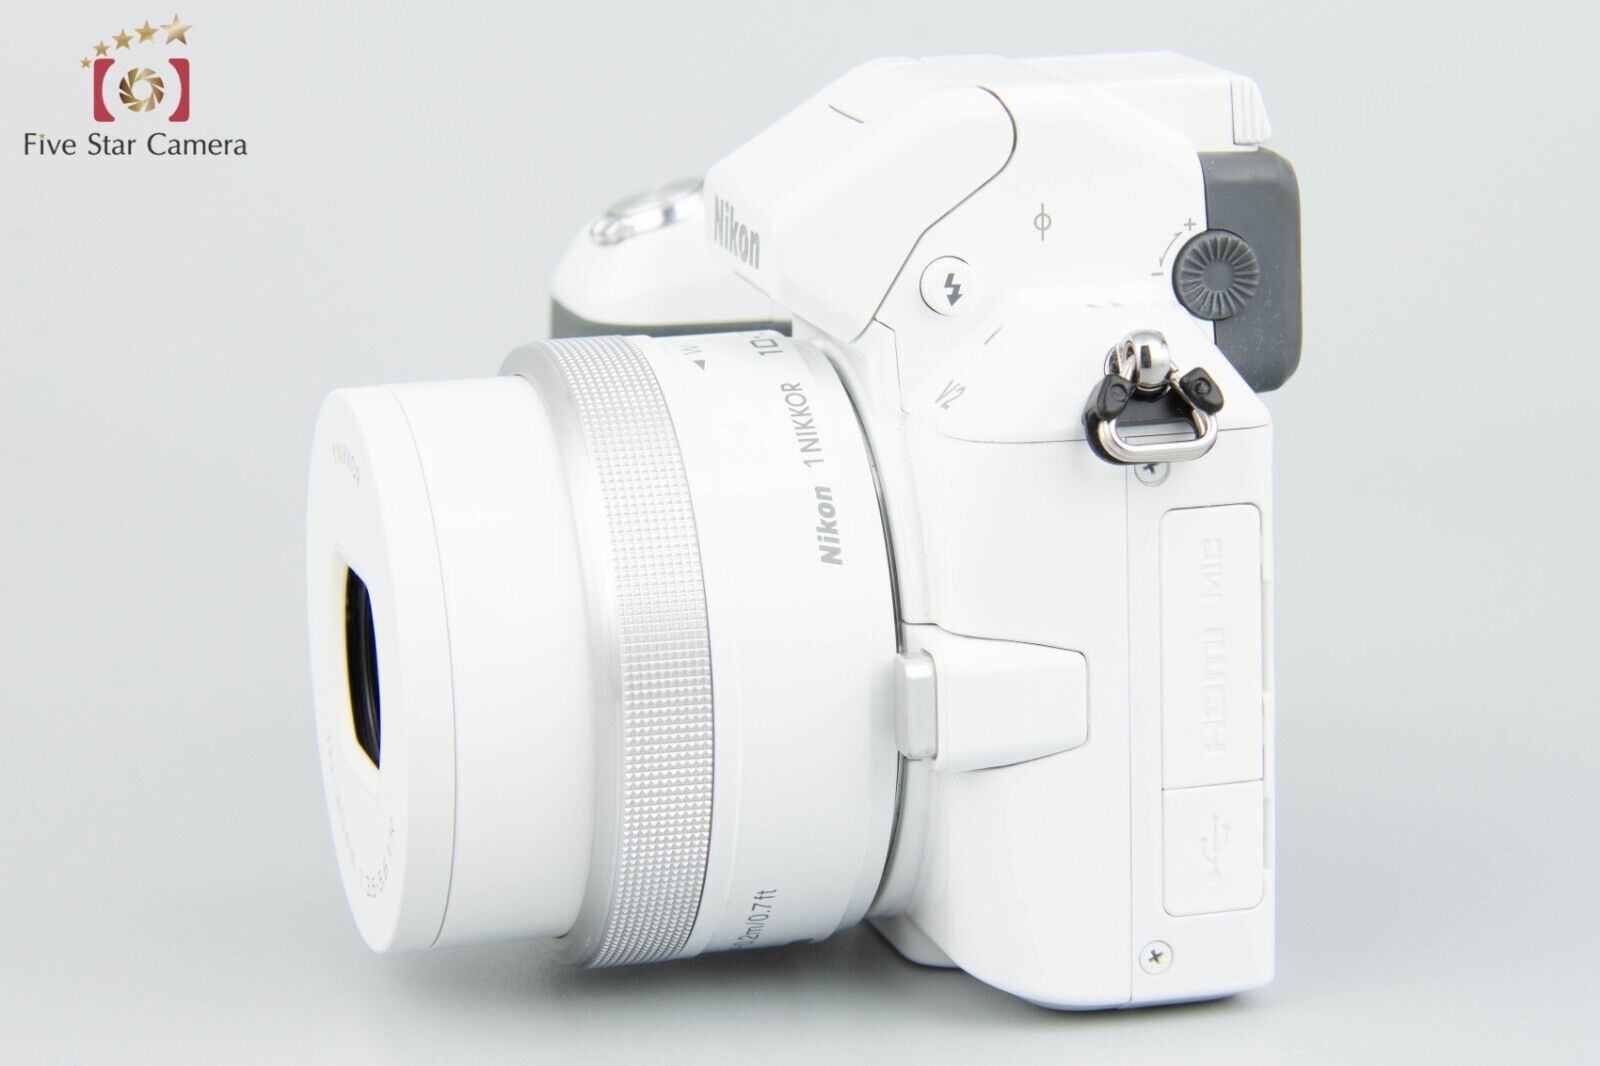 "Count 2,503" Nikon 1 V2 White 14.3MP + 1 NIKKOR 10-30/3.5-5.6 VR New Model